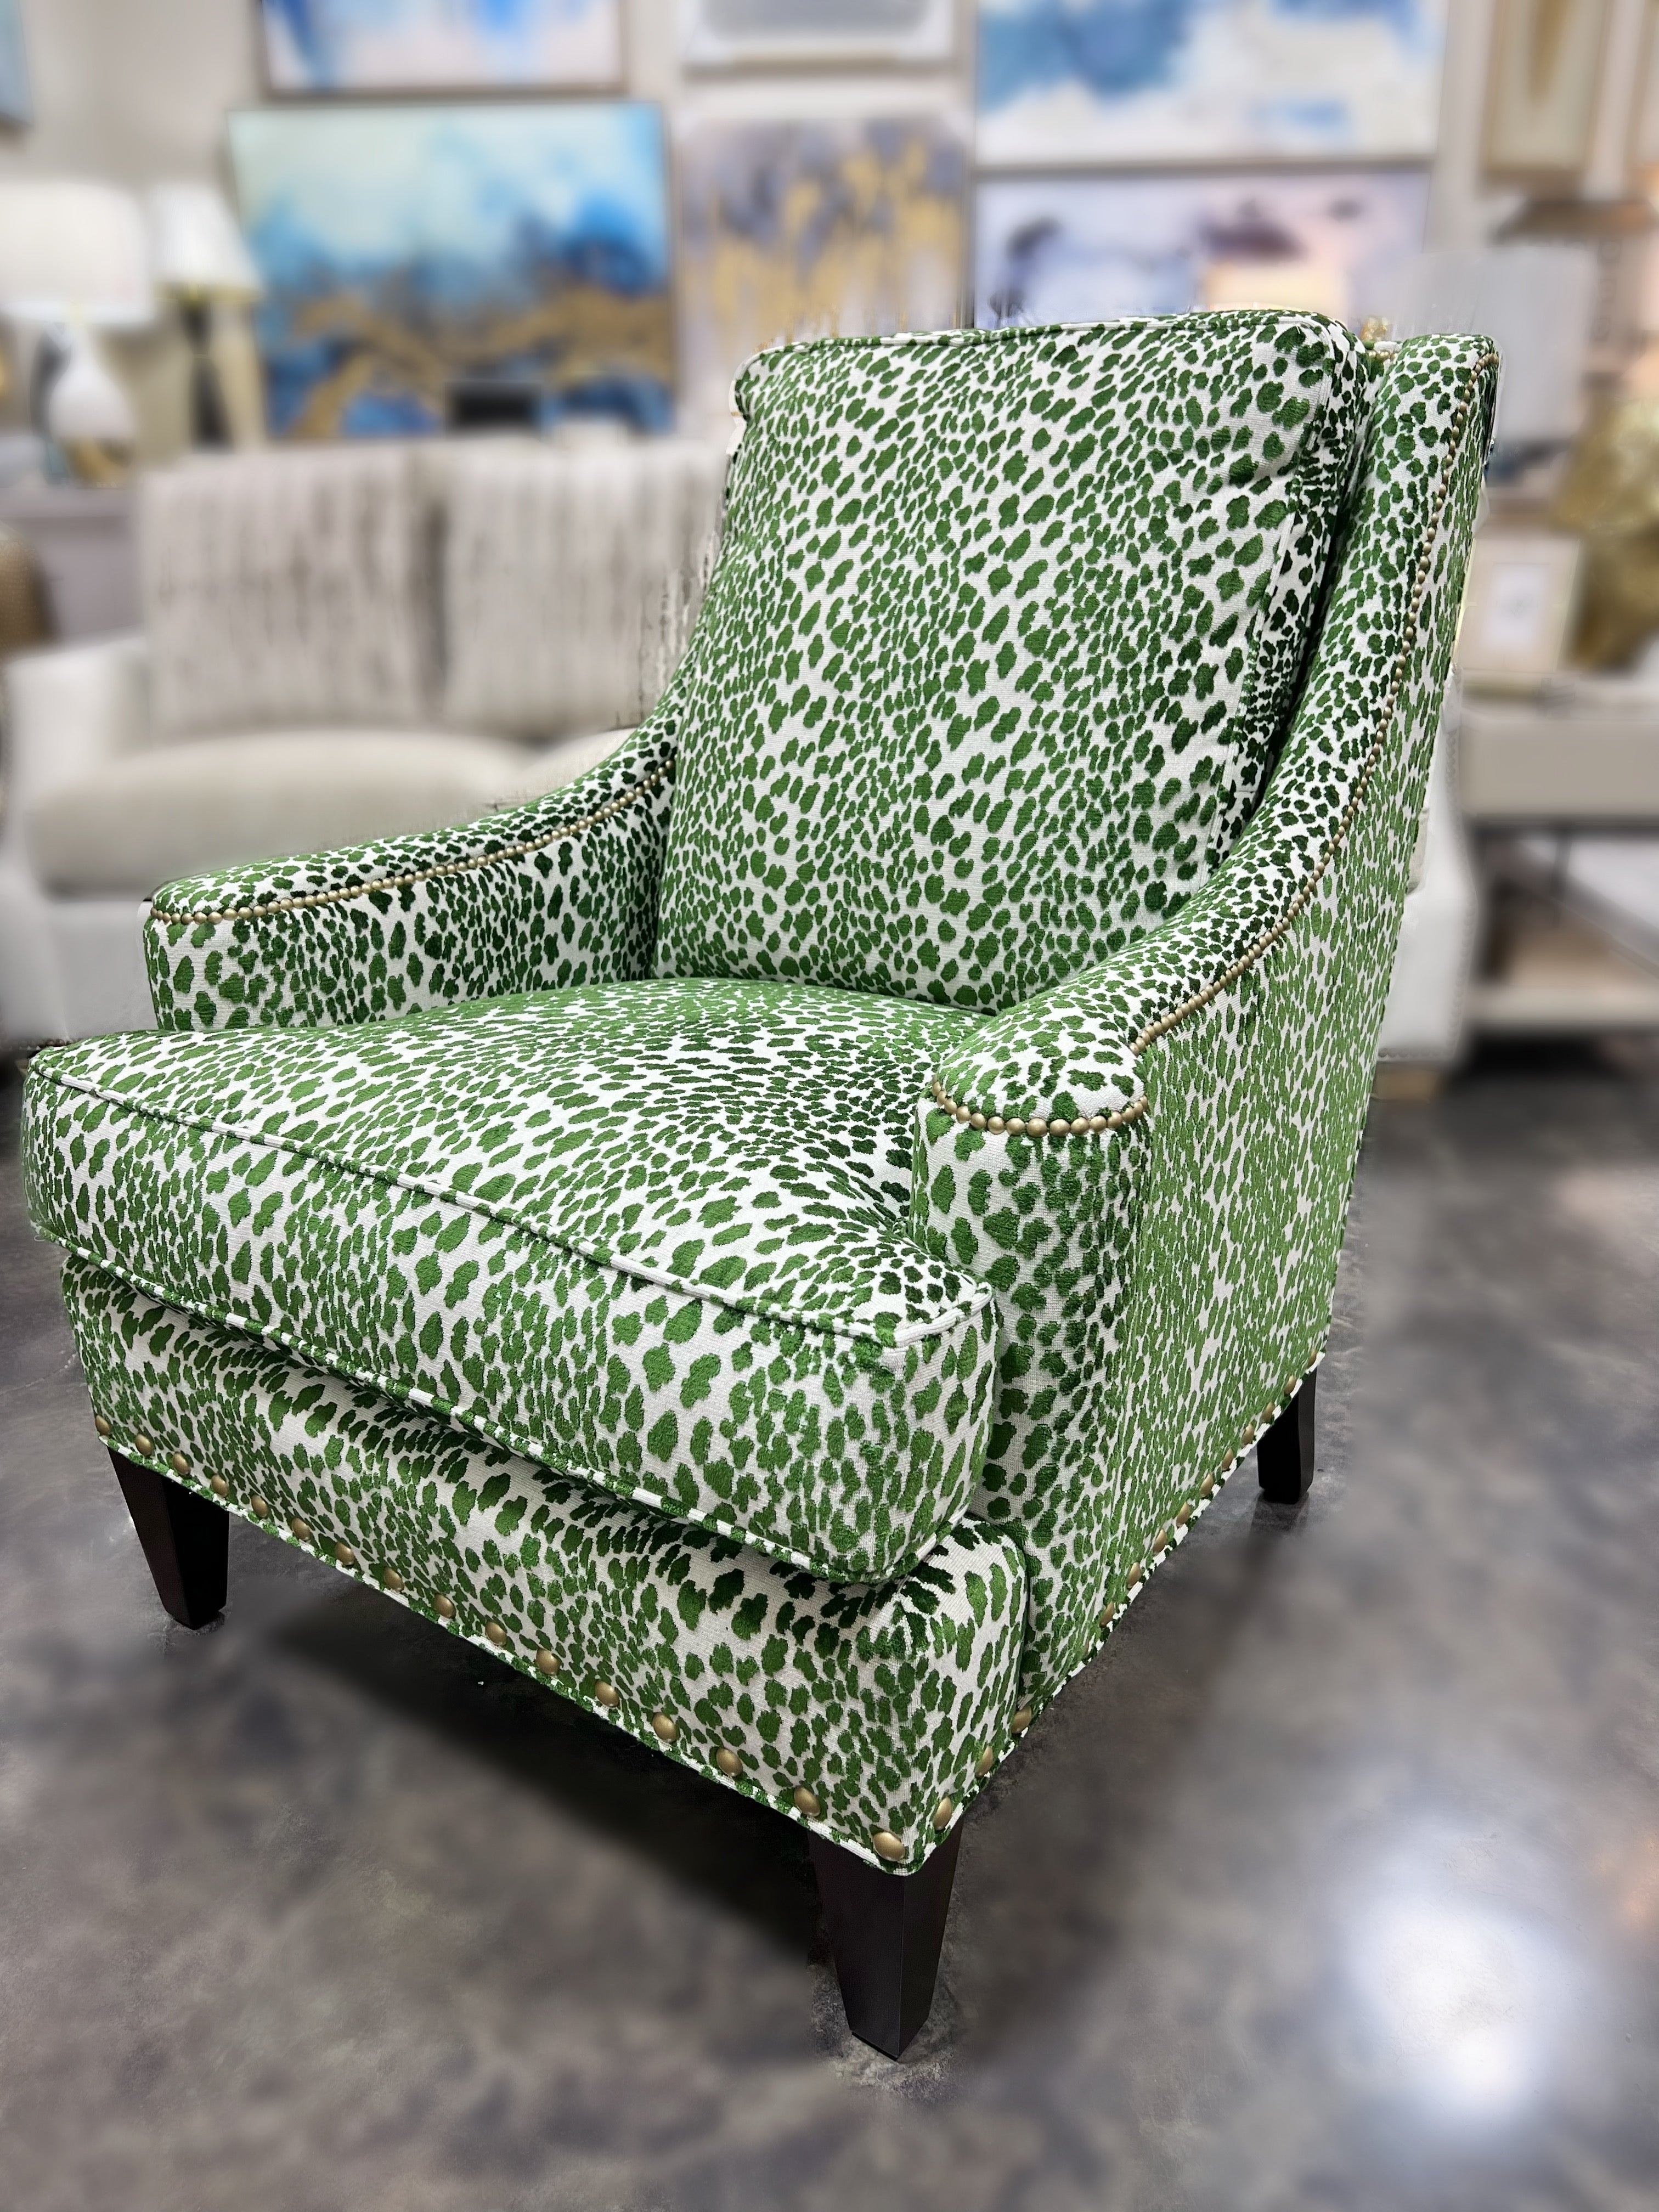 Green Leopard Chair